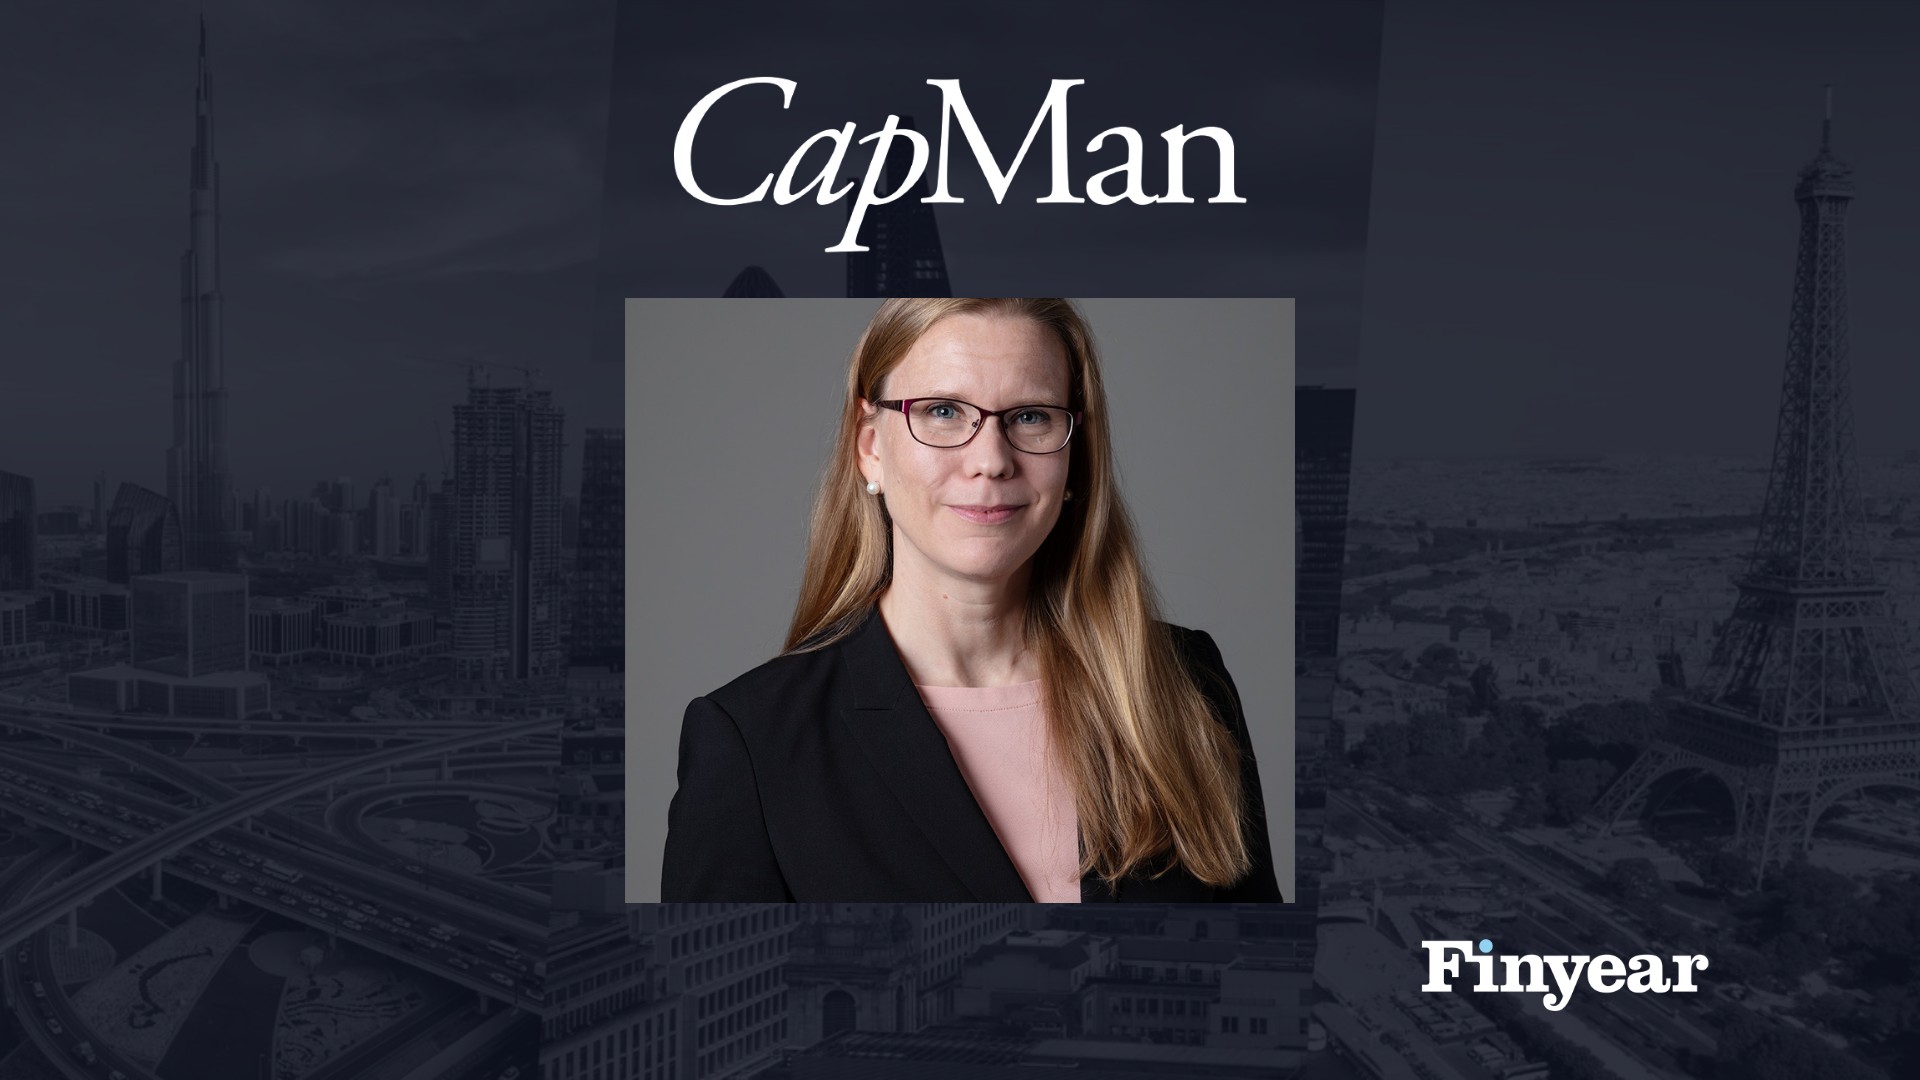 Chronique | Pia Kall, CEO de CapMan, fonds d'investissement nordique qui affiche aujourd'hui 10 milliards d'euros sous gestion. Retour sur le rôle d'une femme dans un secteur largement masculin.